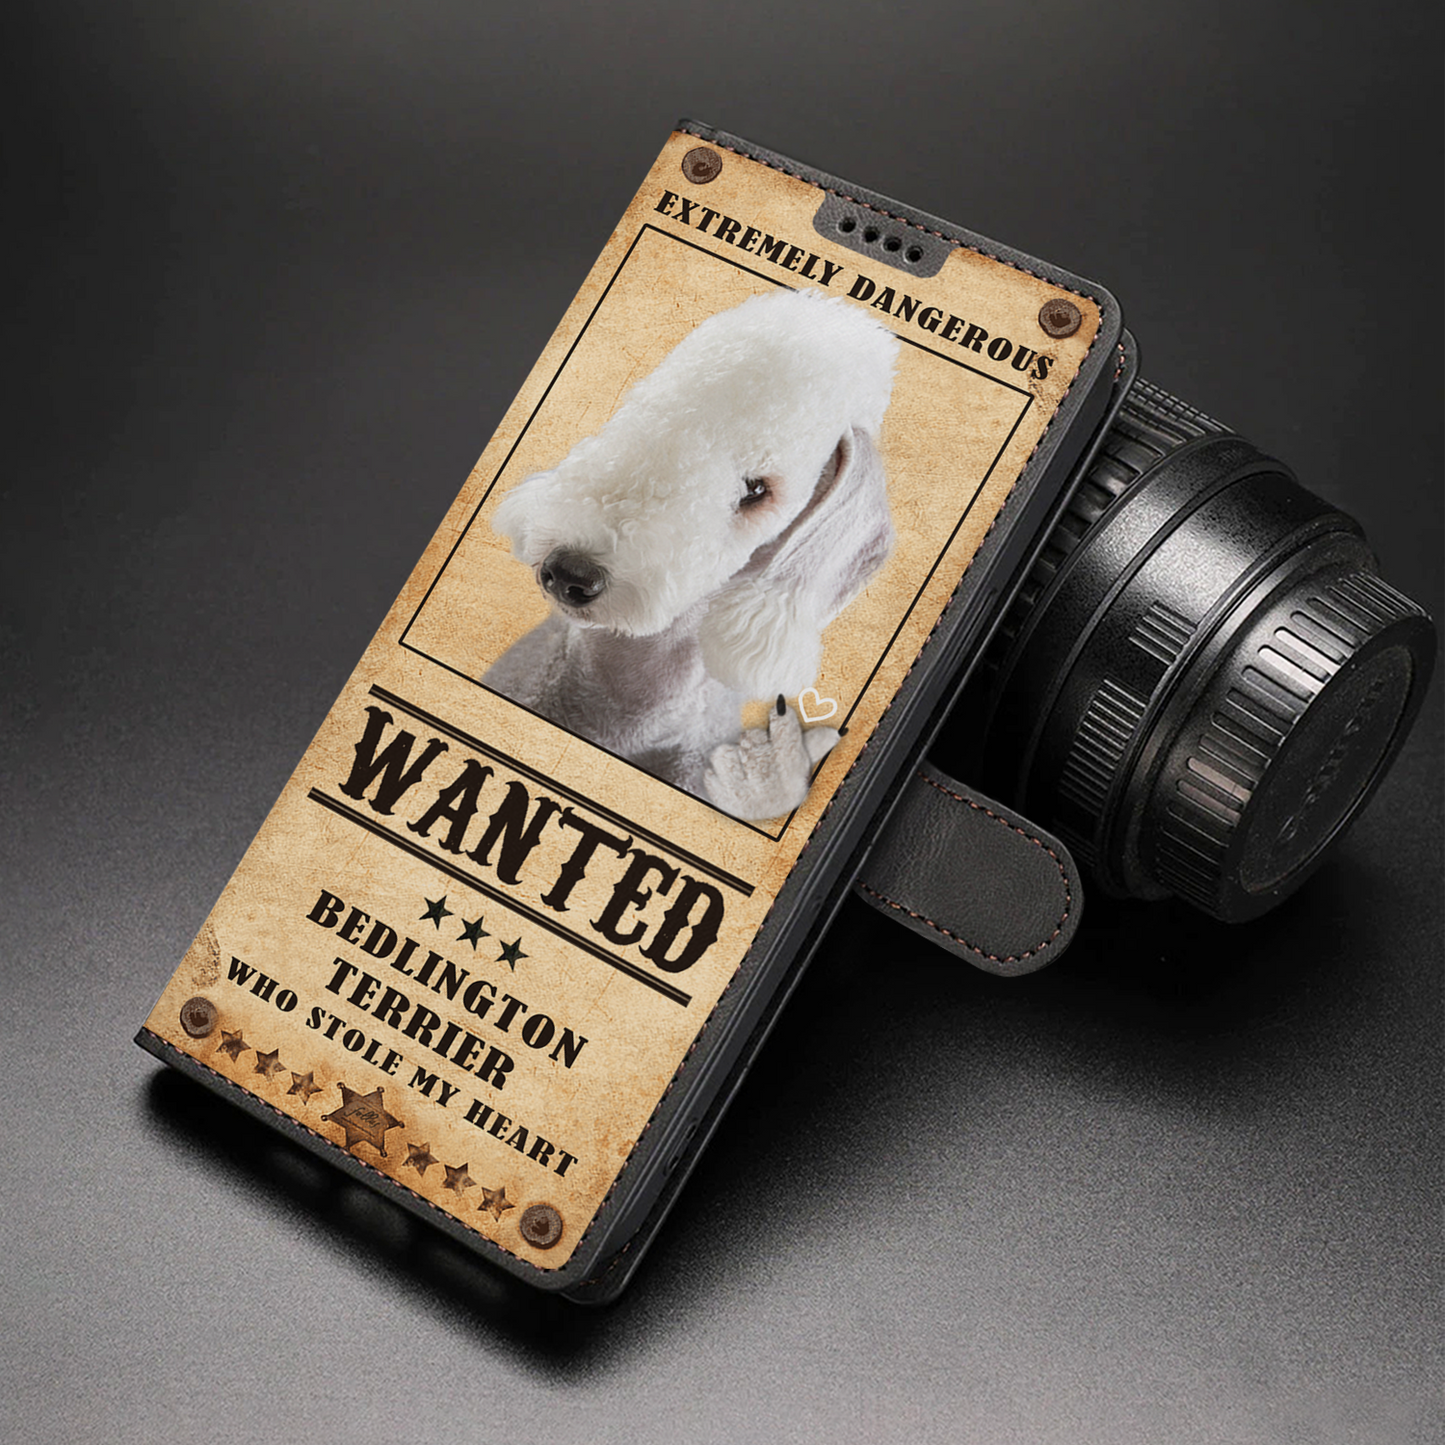 Heart Thief Bedlington Terrier - Étui de téléphone portefeuille inspiré de l'amour V1